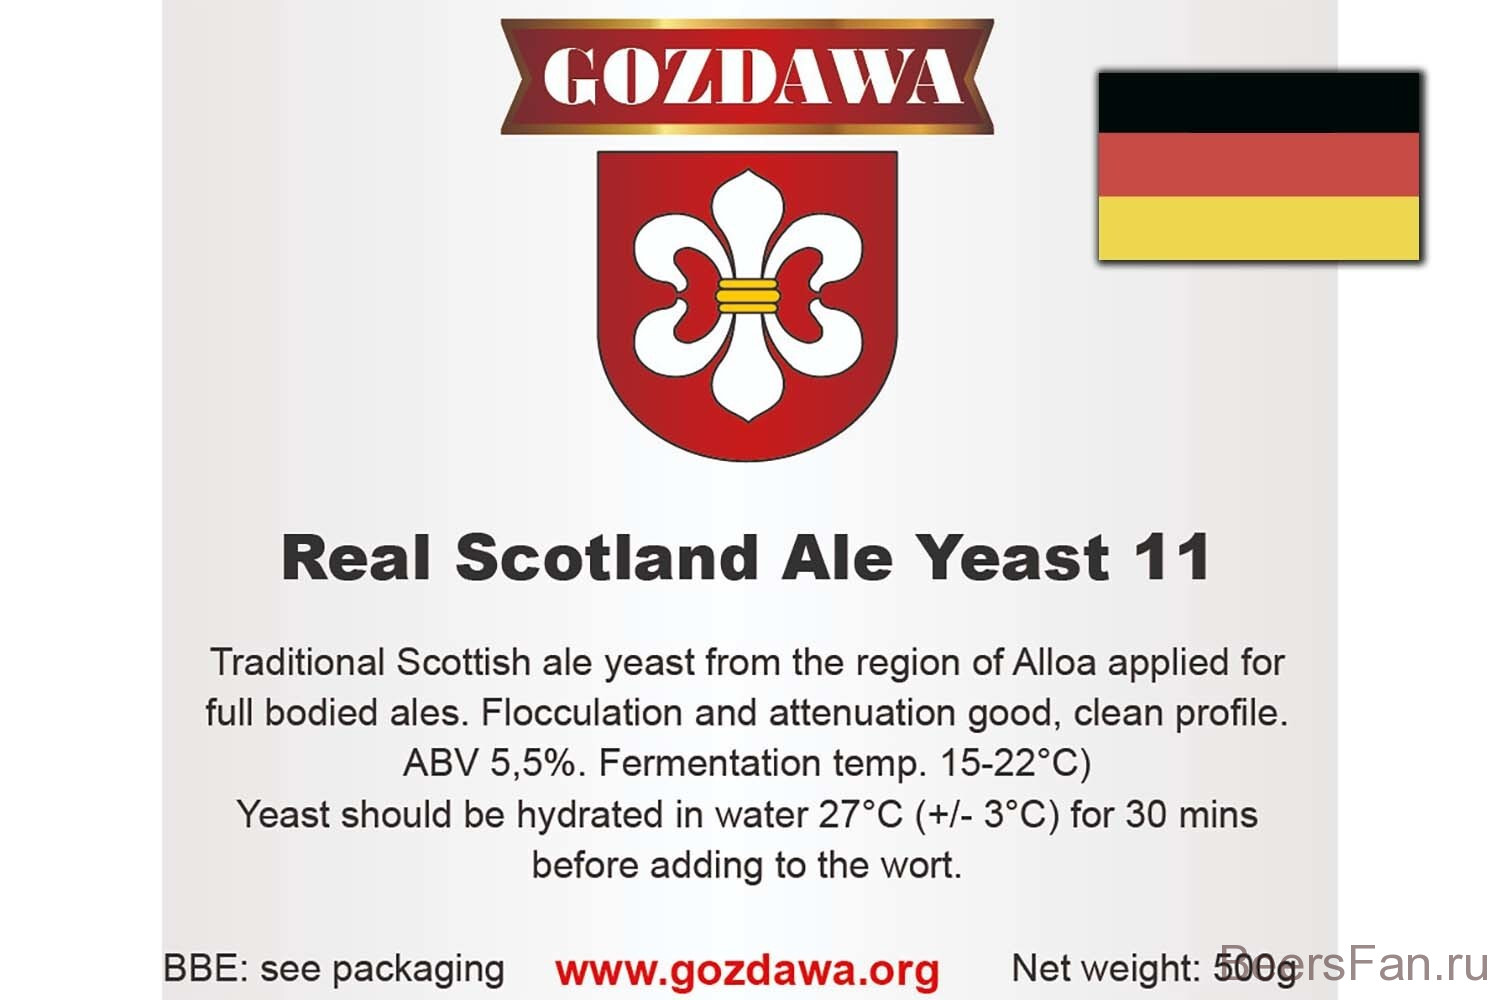 Дрожжи Гоздава - Gozdawa RSAY 11 (Real Scotland Ale Yeast).